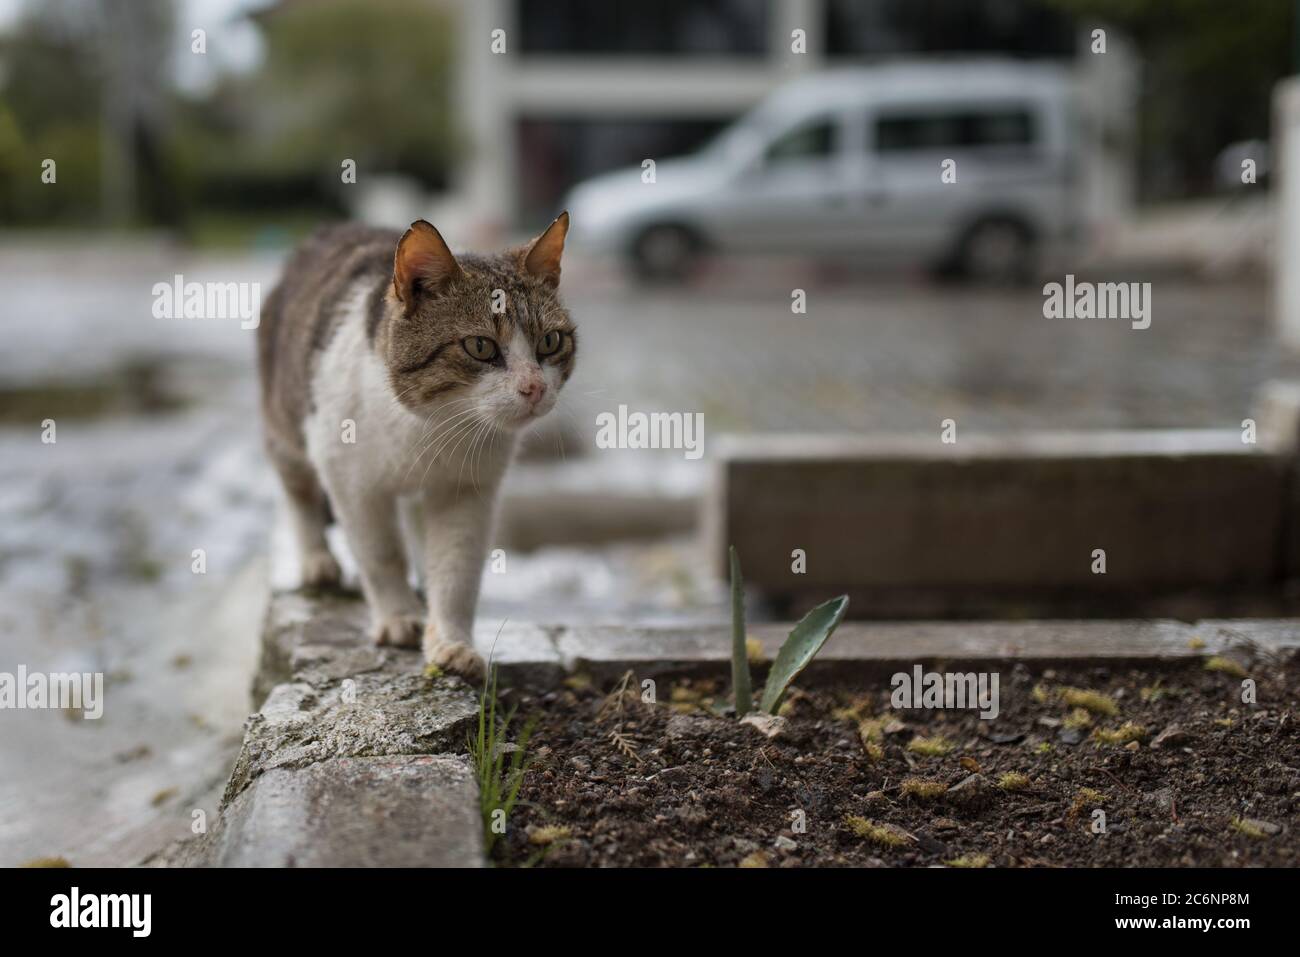 Bagno turco gatto randagio wakling su un cordolo nella parte anteriore della macchina Foto Stock